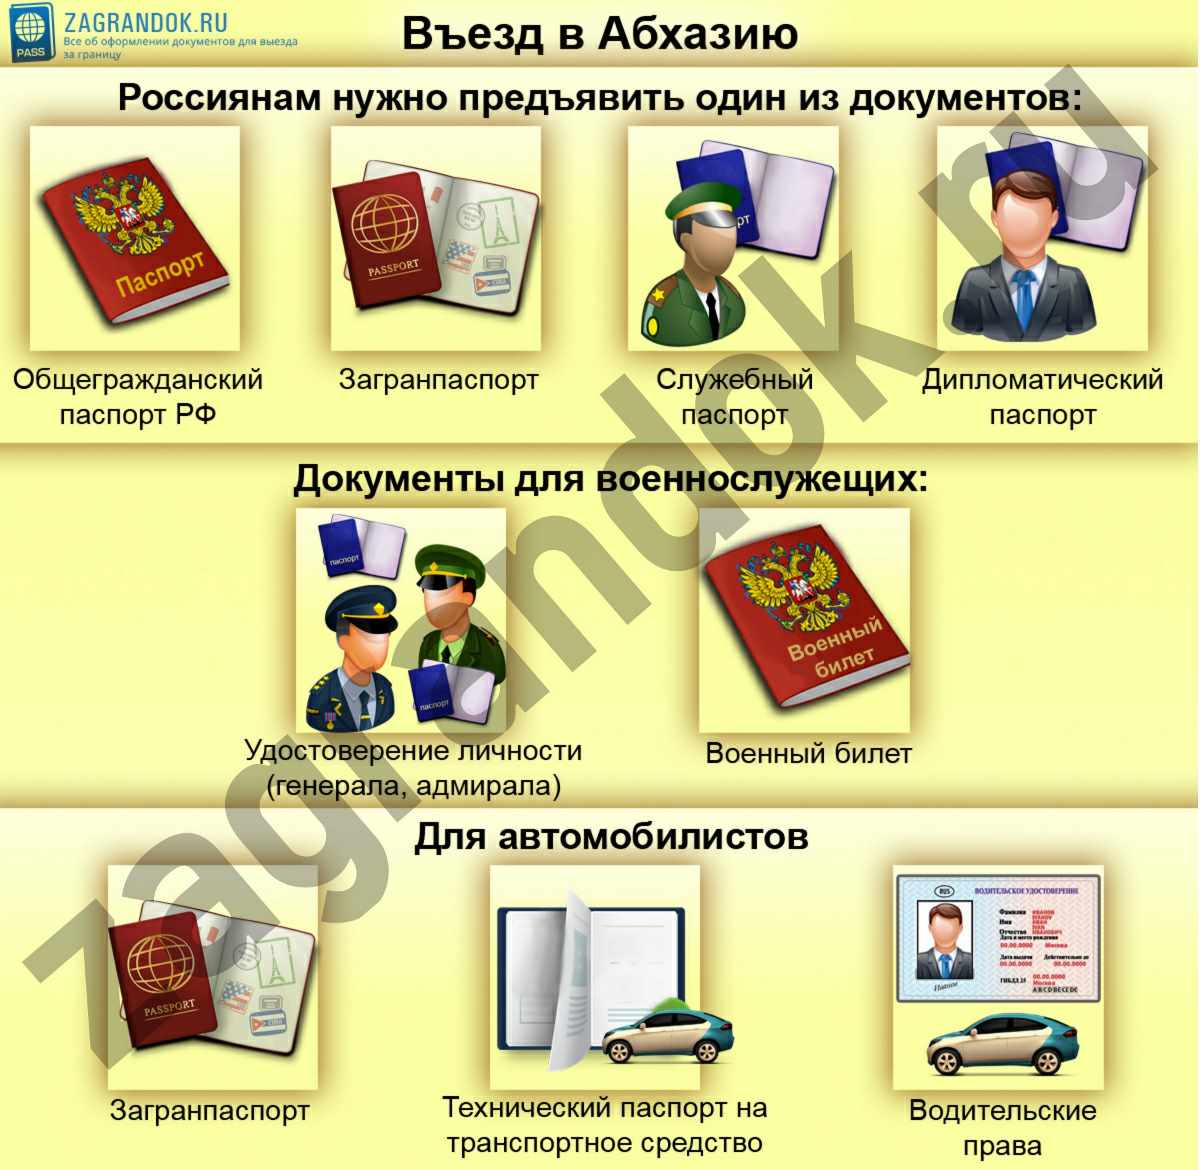 Нужен ли загранпаспорт в абхазию - для въезда россиян в 2018 году